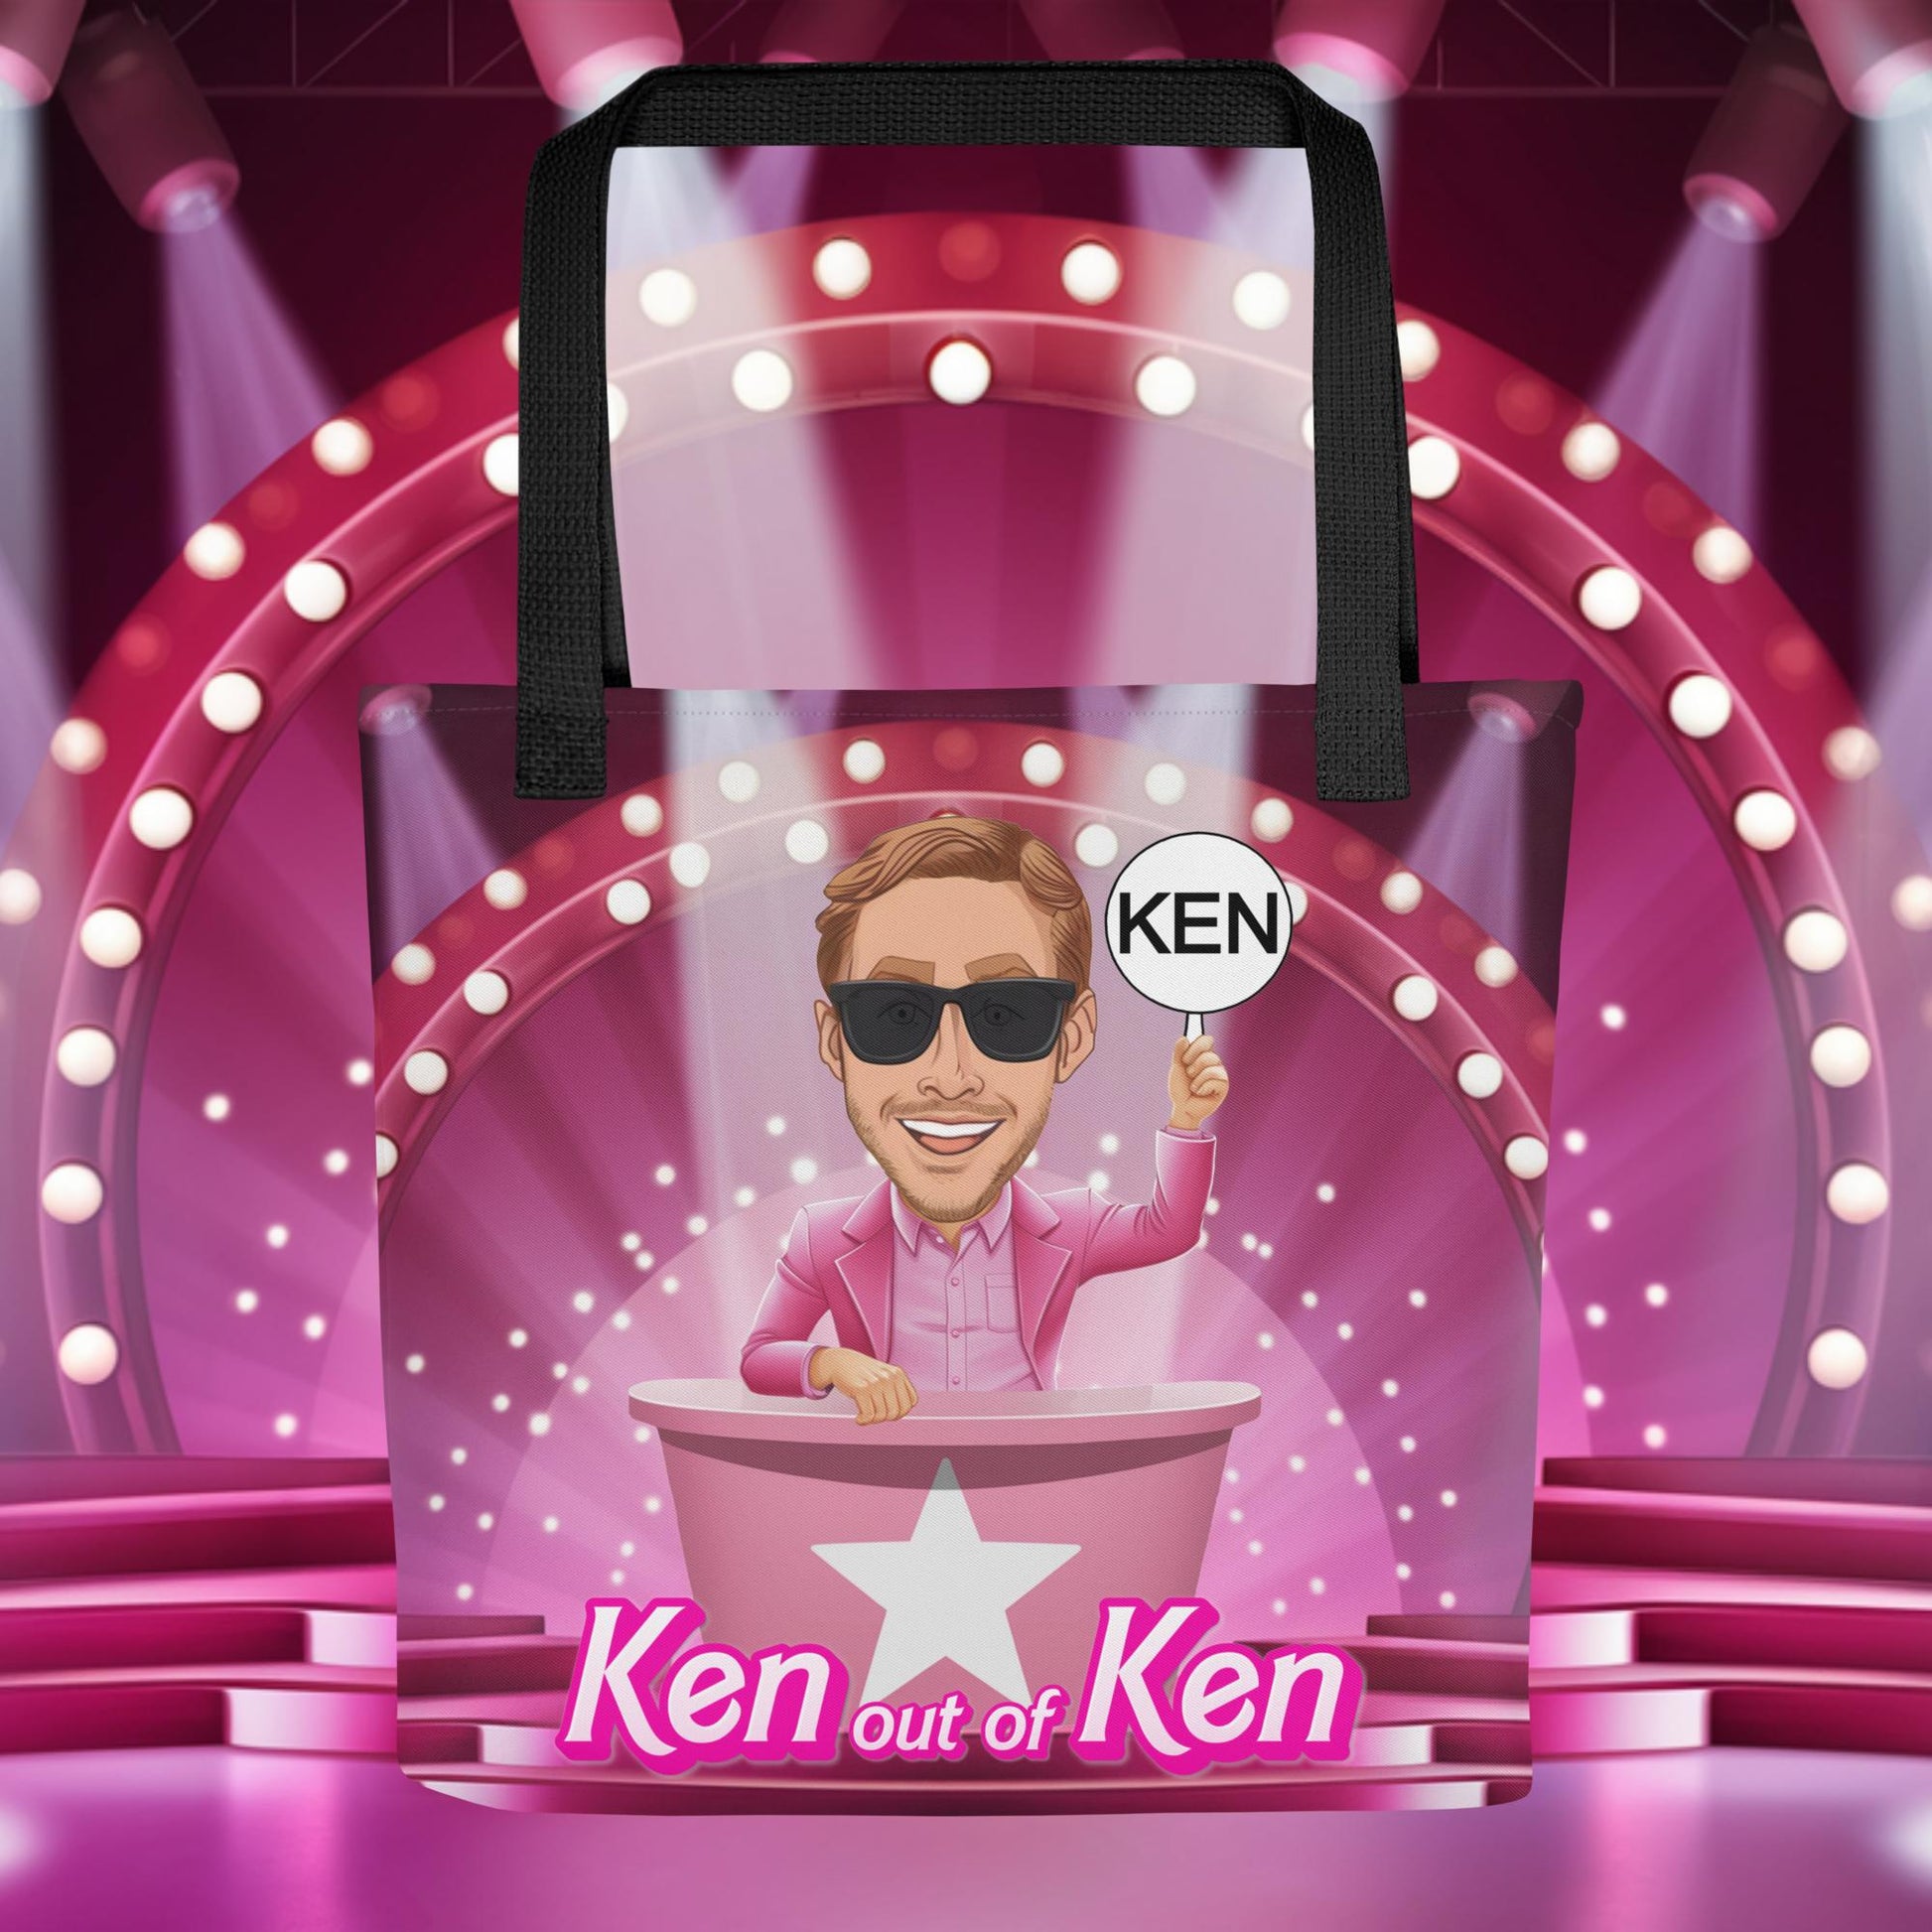 Ken out of Ken Ryan Gosling Barbie Movie Tote bag Next Cult Brand